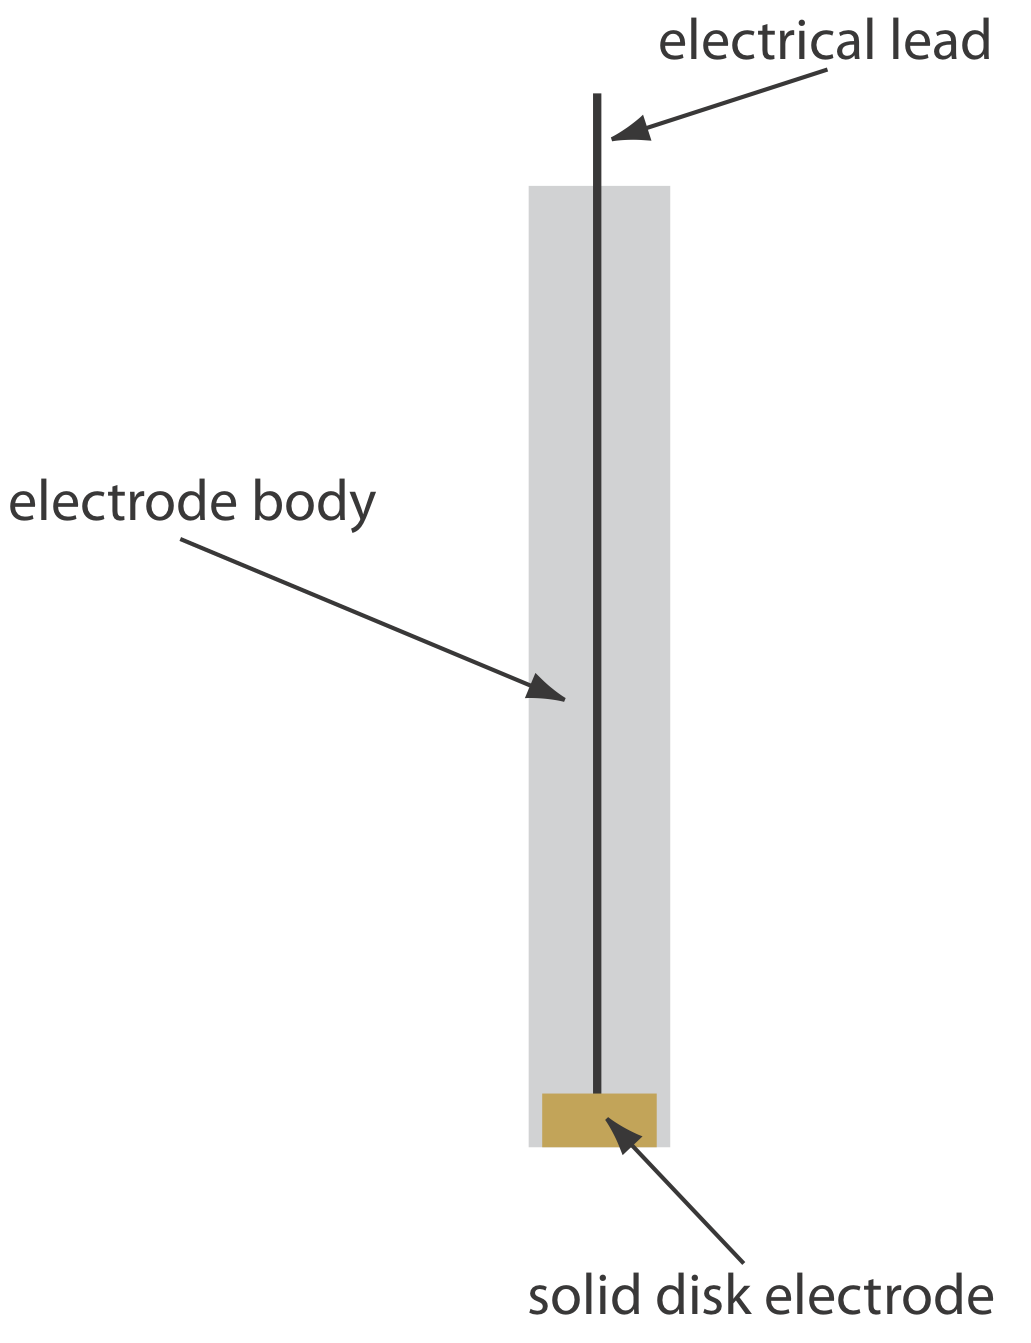 Esquema que muestra un electrodo sólido. El electrodo se forma en un disco y se sella en el extremo de un soporte de polímero inerte junto con un cable eléctrico.